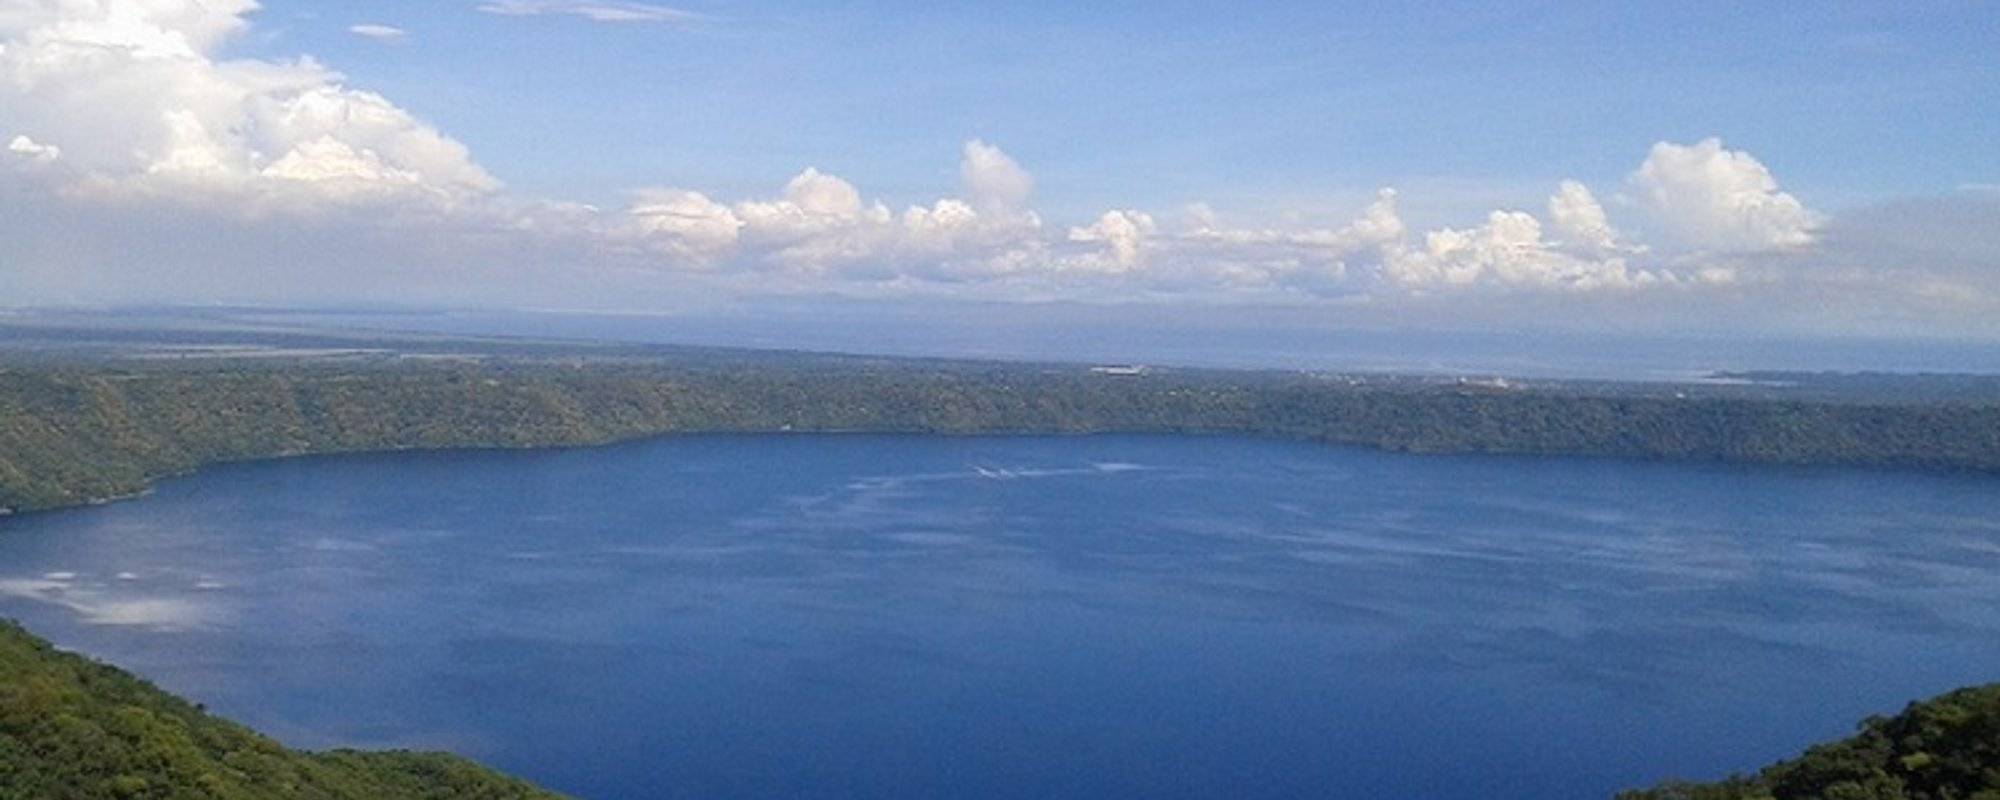 Tourism in Nicaragua Between heaven and earth / Entre el cielo y la tierra